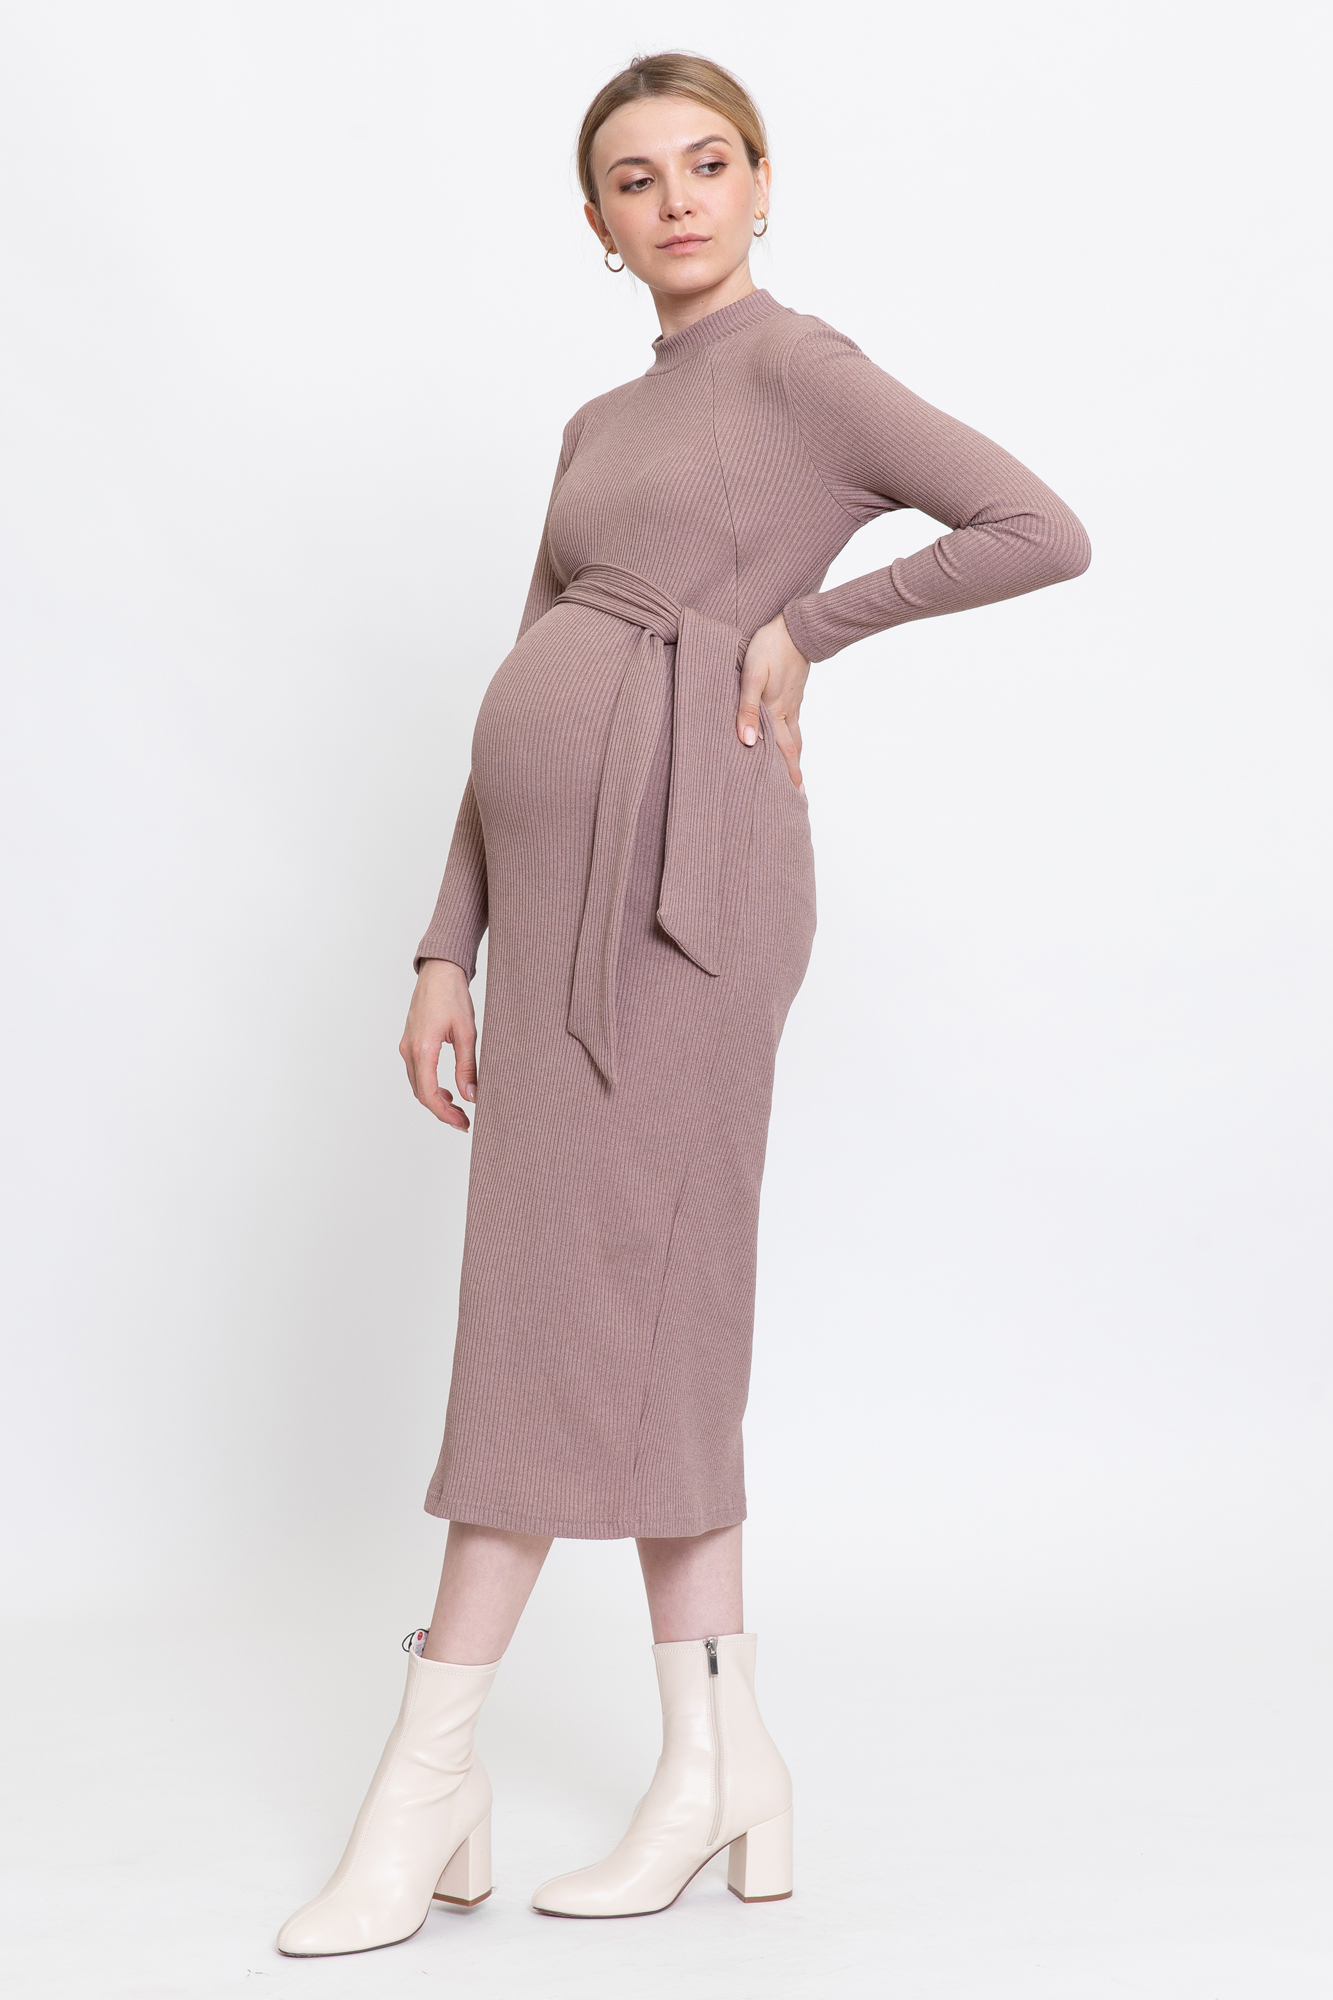 Платье для беременных женское Magica bellezza 0178а коричневое 48 RU